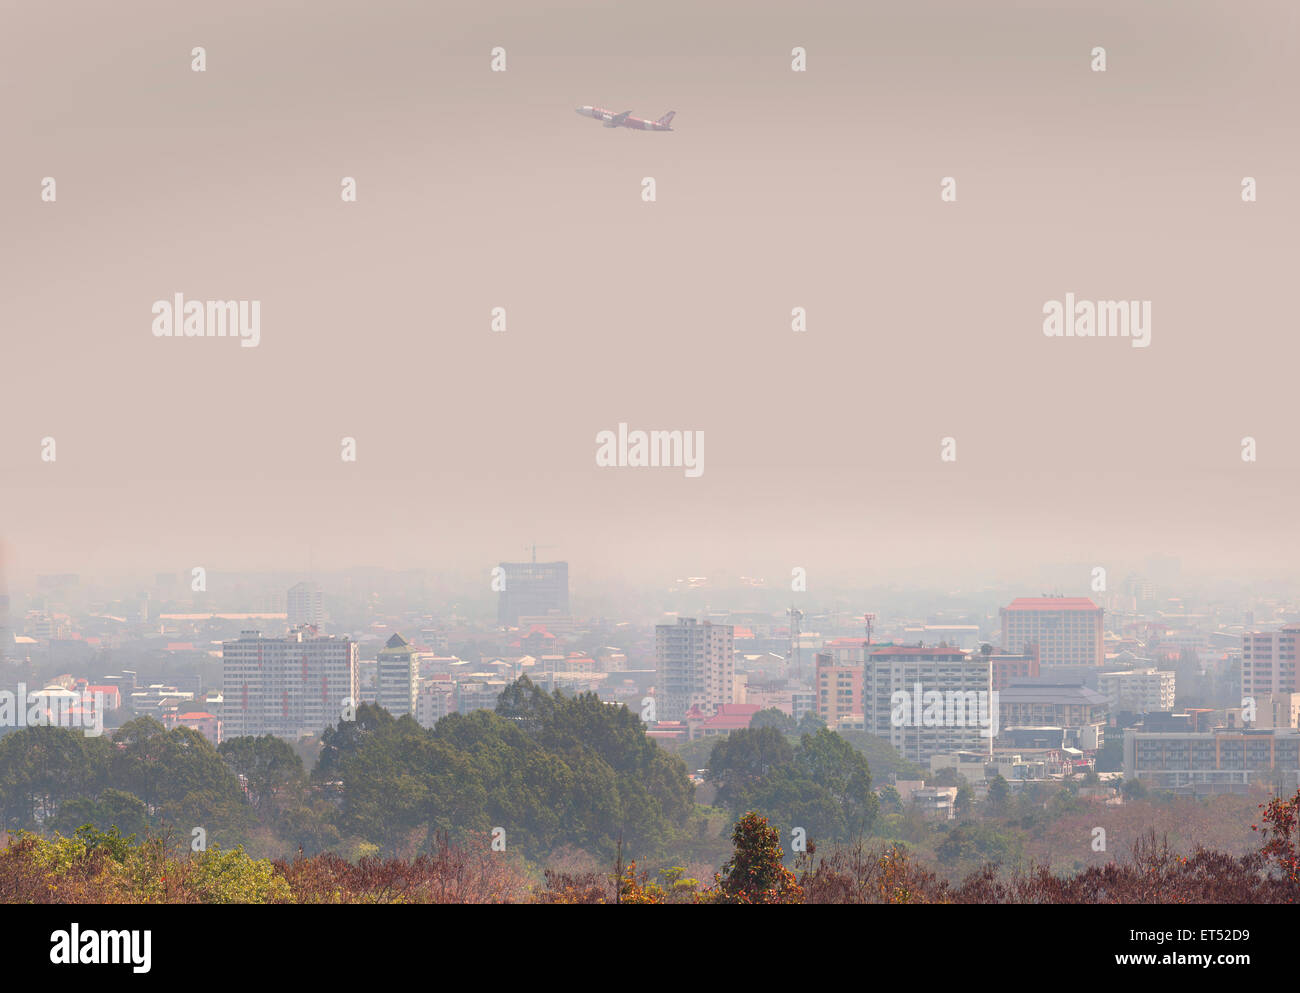 L'Asie de l'air passenger jet passe au-dessus de Chiang Mai, en Thaïlande, la pollution aérienne plane sur la ville, le smog Banque D'Images